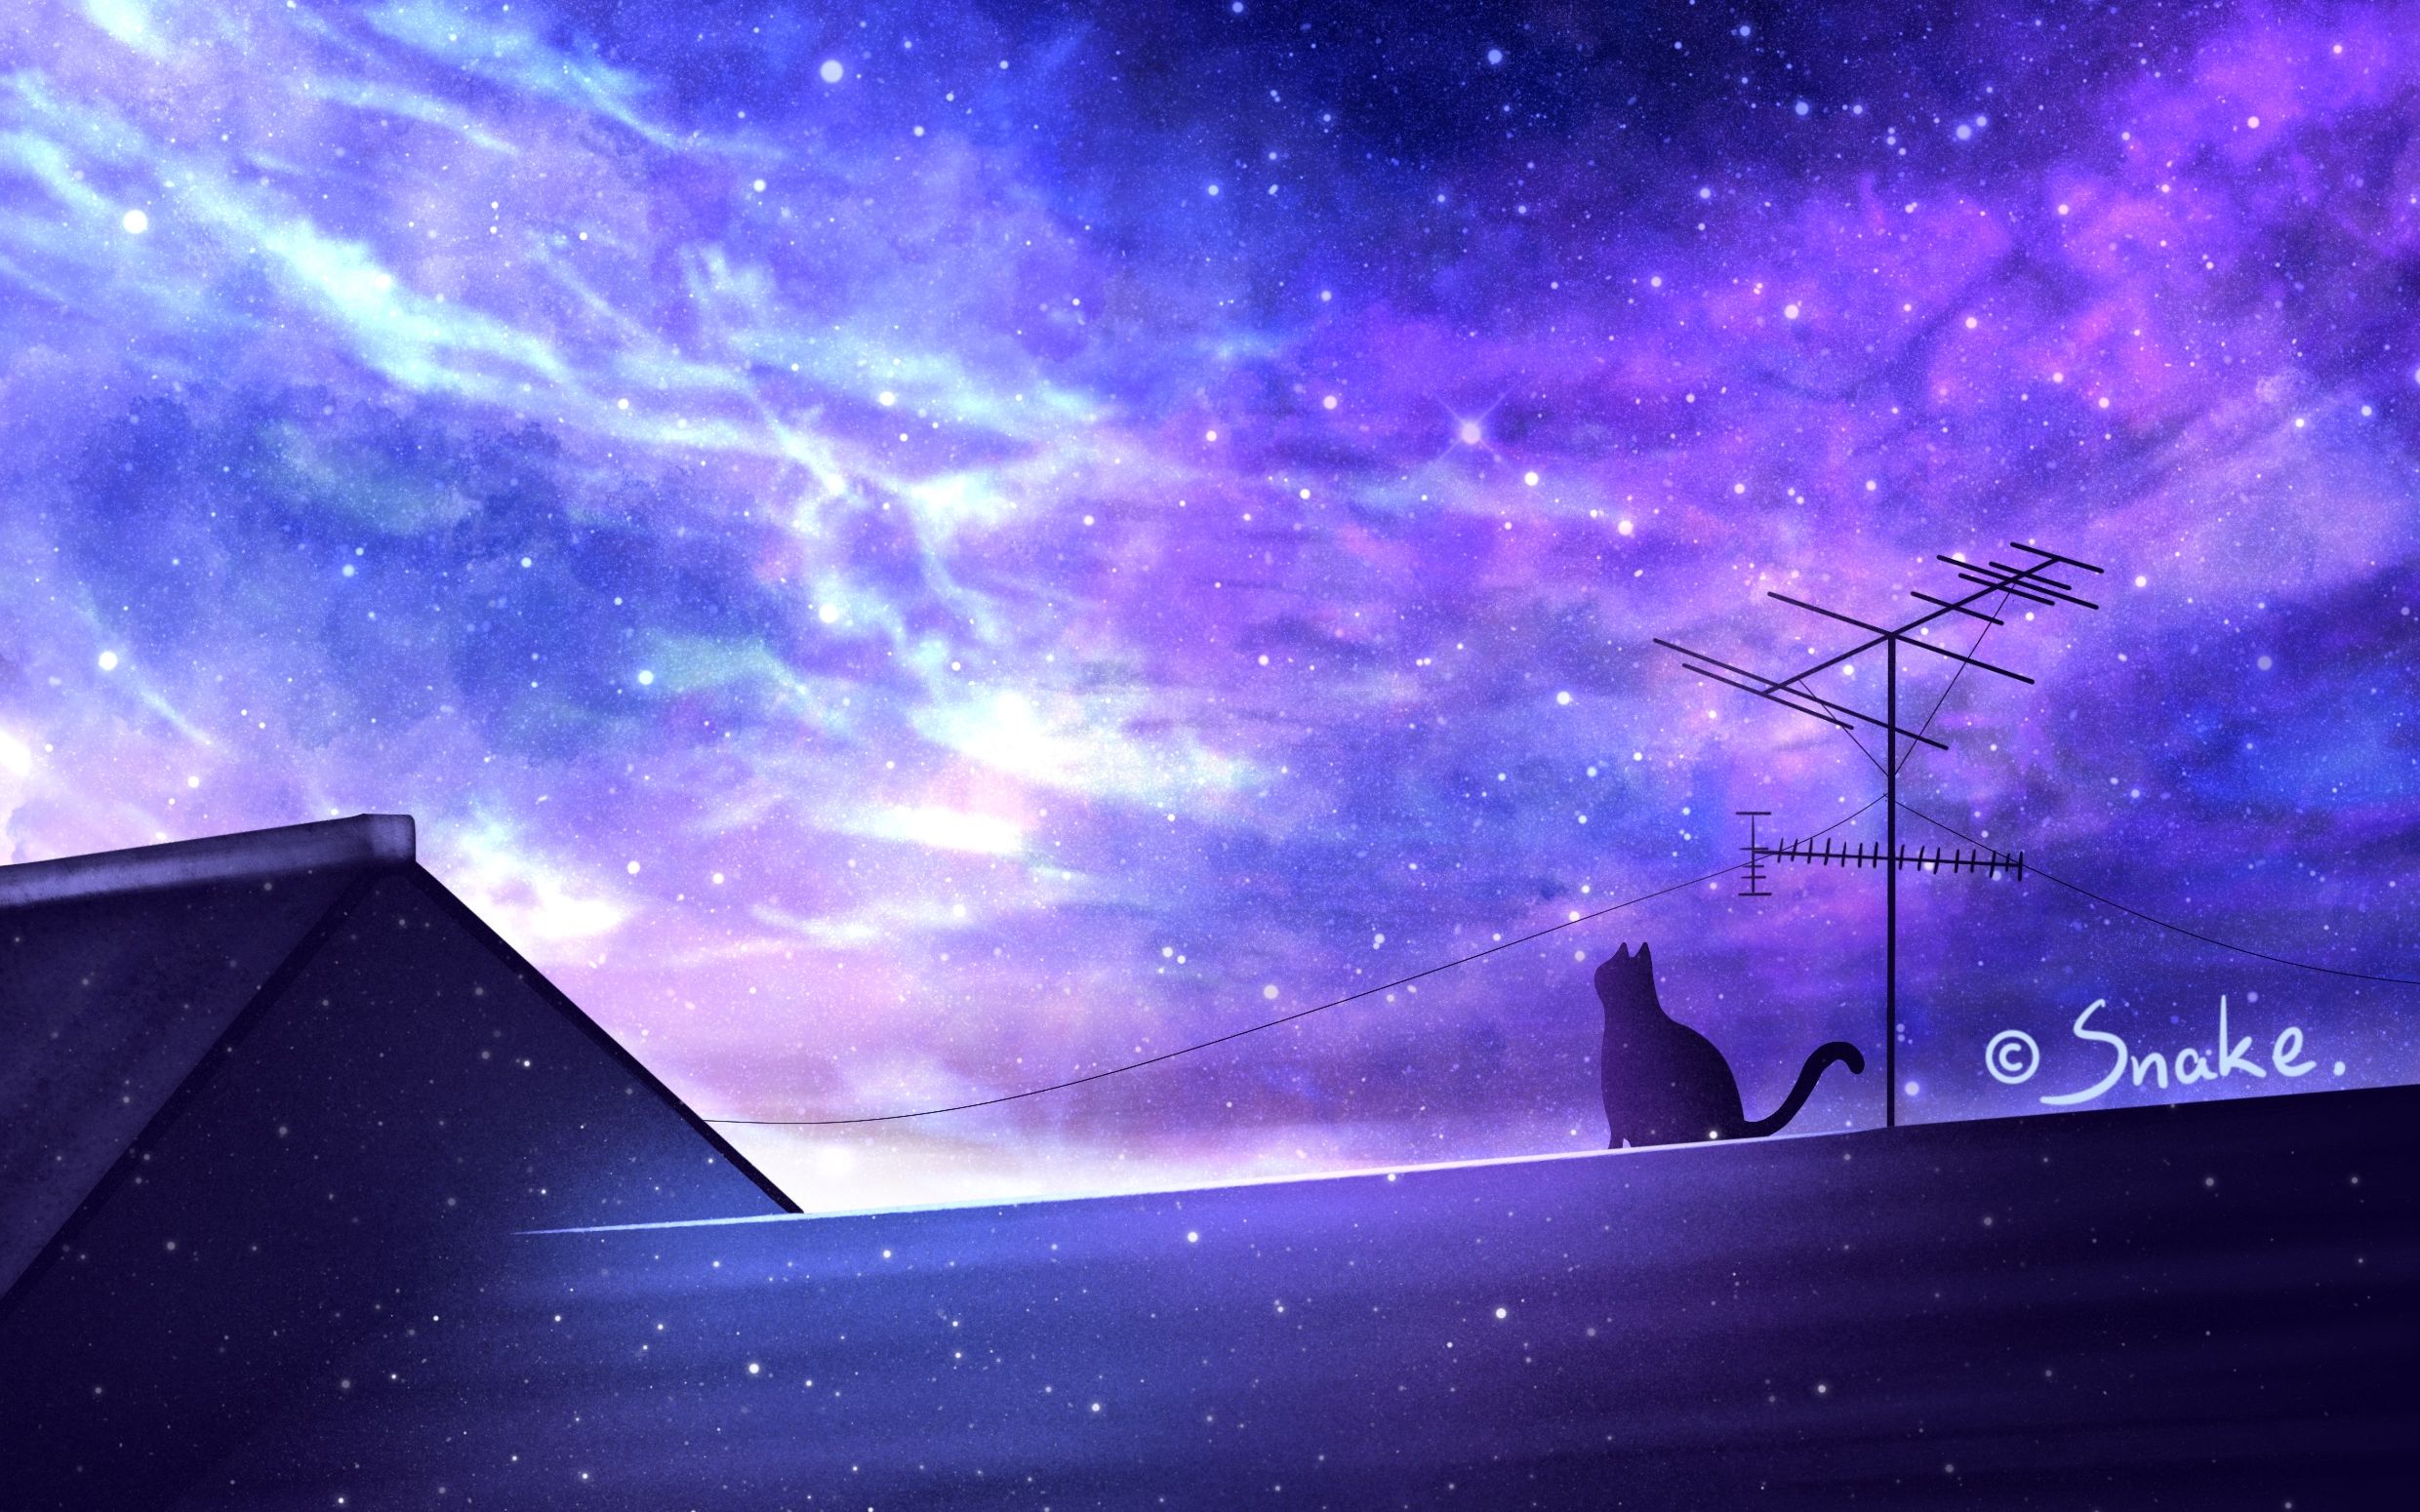 【procreate】屋顶上的猫咪,星空图